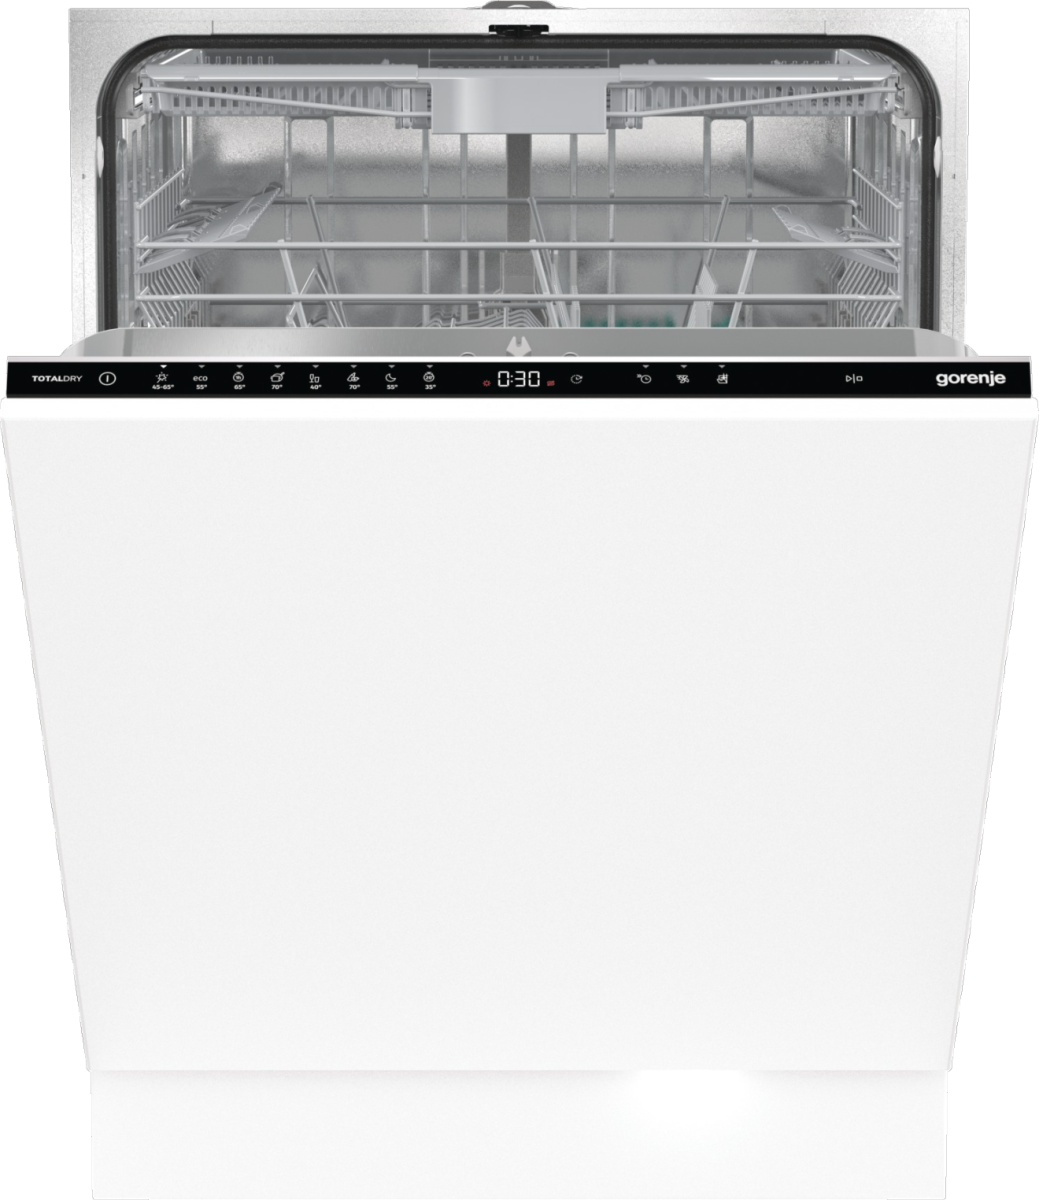 Встраиваемая посудомоечная машина Gorenje GV663D60 встраиваемая посудомоечная машина gorenje gv663d60